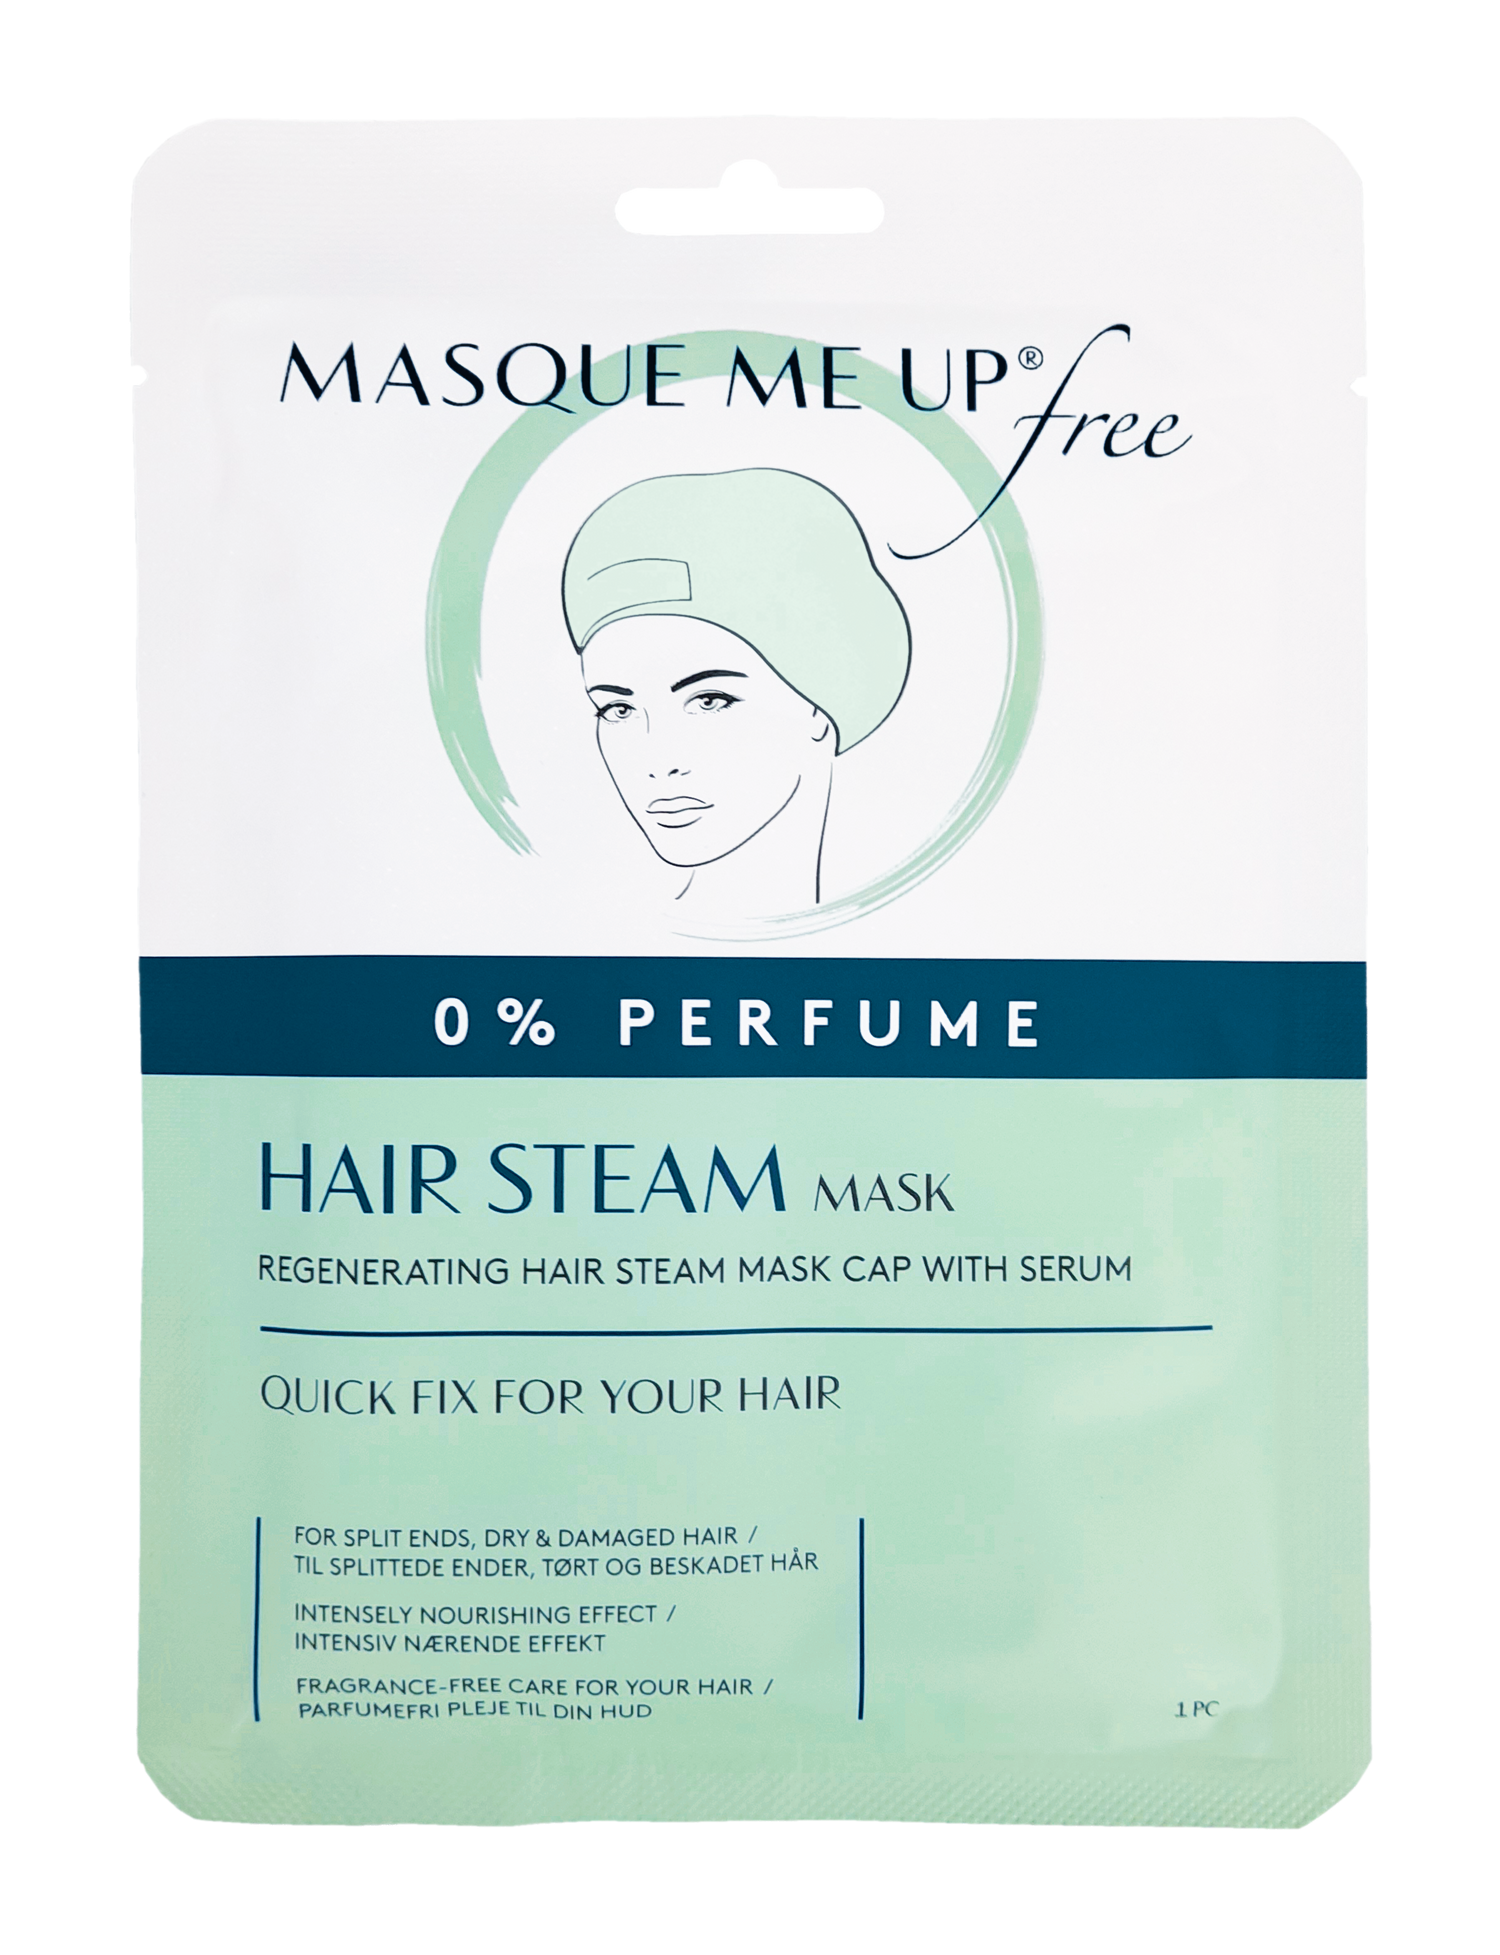 Free Hair Steam Mask